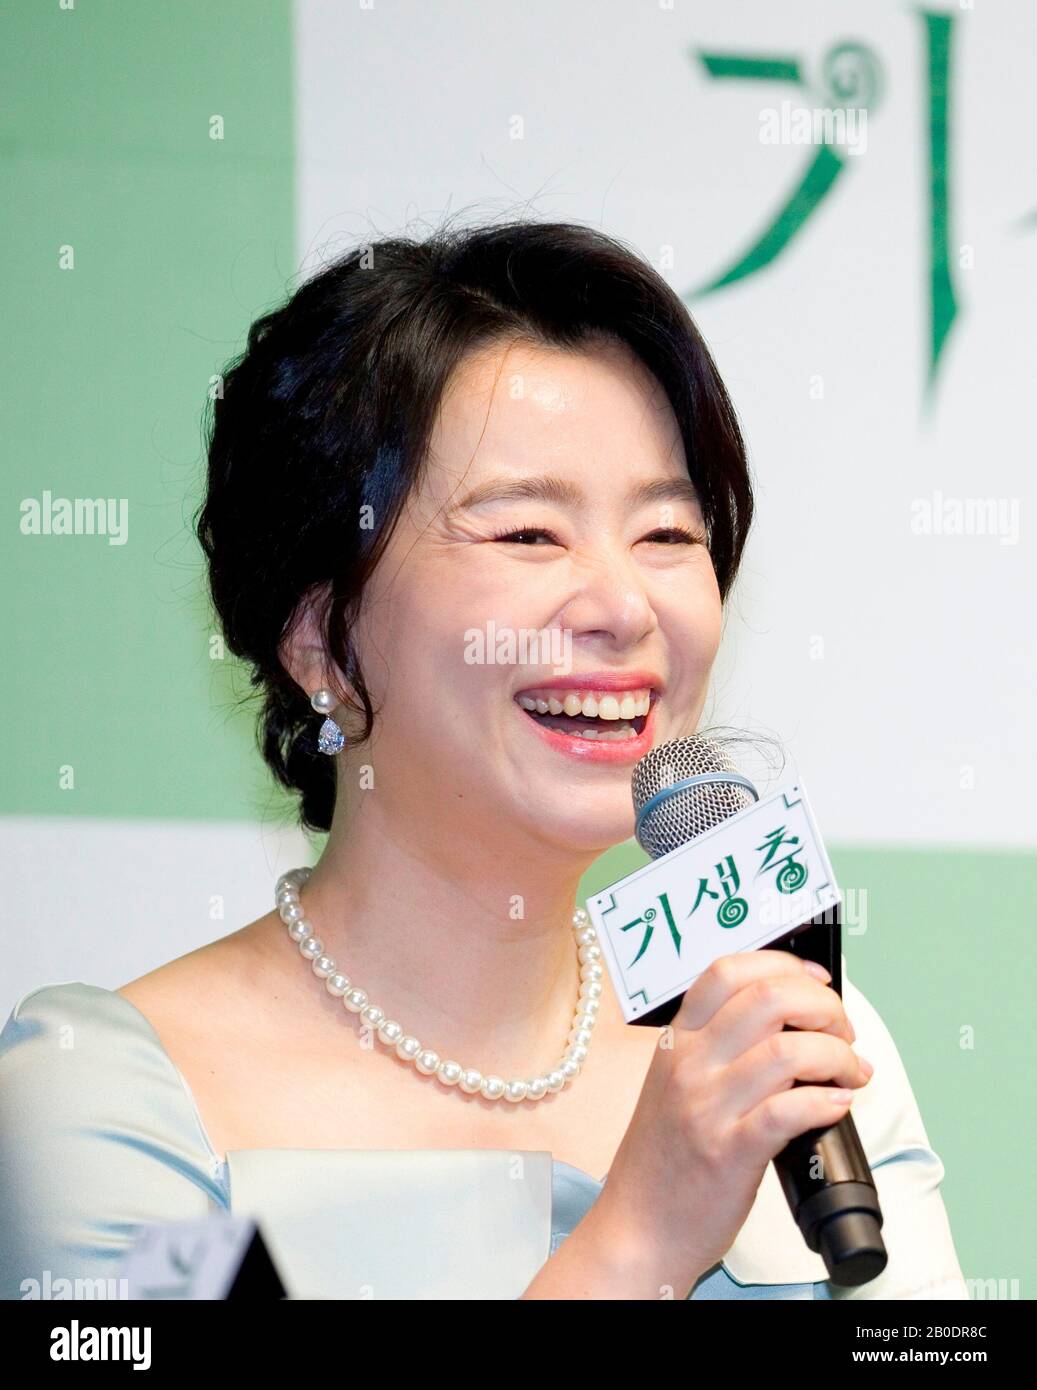 Jang Hye-Jin, 19 février 2020 : l'actrice sud-coréenne Jang Hye-Jin, acteur du film « Parasite » primé aux Oscars, assiste à une conférence de presse à Séoul, en Corée du Sud. Le thriller coréen de la comédie noire a remporté quatre Oscars lors des Academy Awards le 9 février 2020, devenant le premier film de langue non anglaise à remporter la meilleure Photo des Oscars dans son histoire de 92 ans. Crédit: Lee Jae-Won/Aflo/Alay Live News Banque D'Images